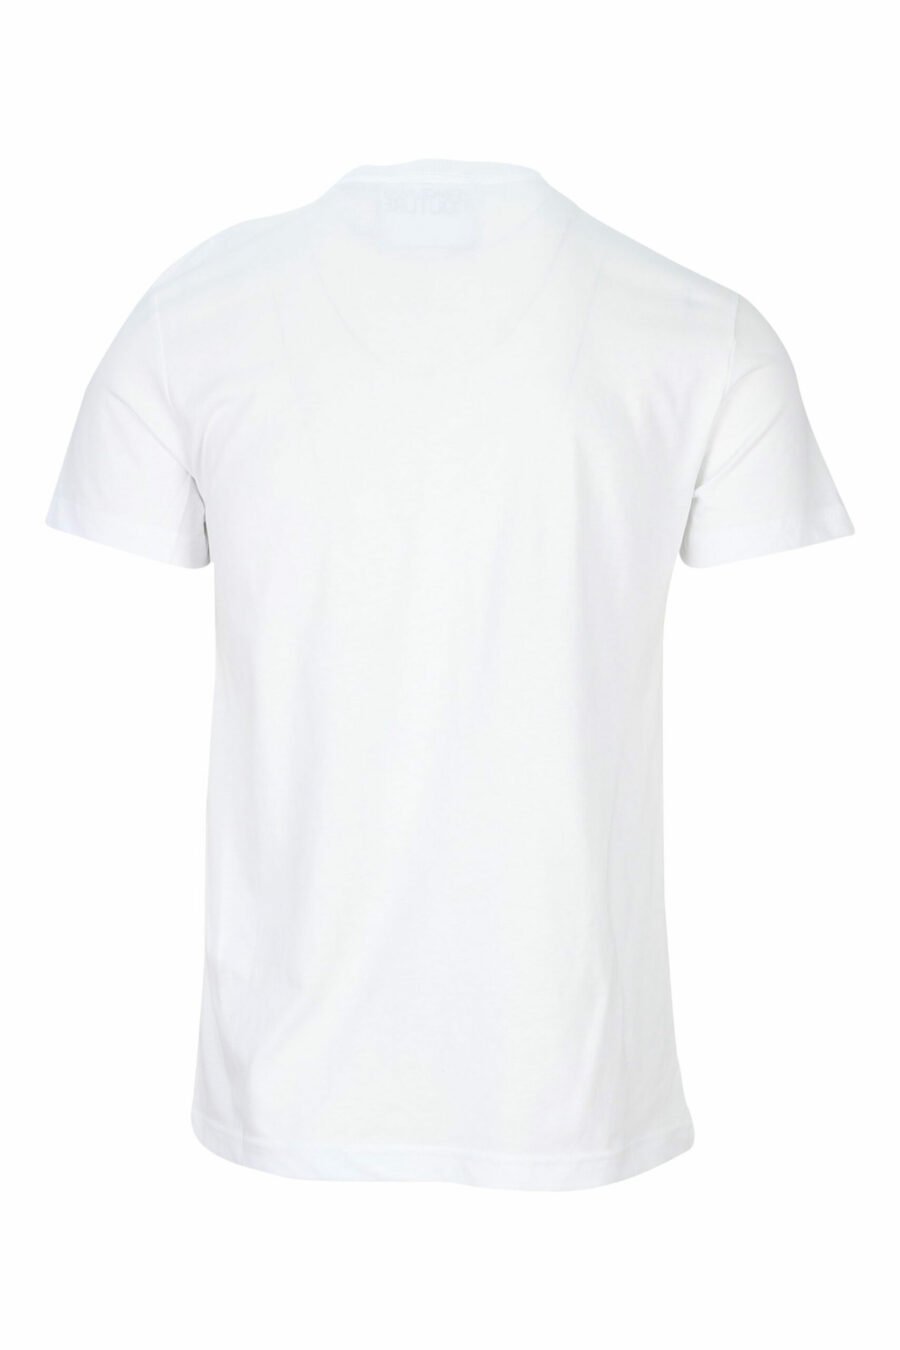 T-shirt branca com mini-logotipo circular preto - 8052019468526 1 à escala